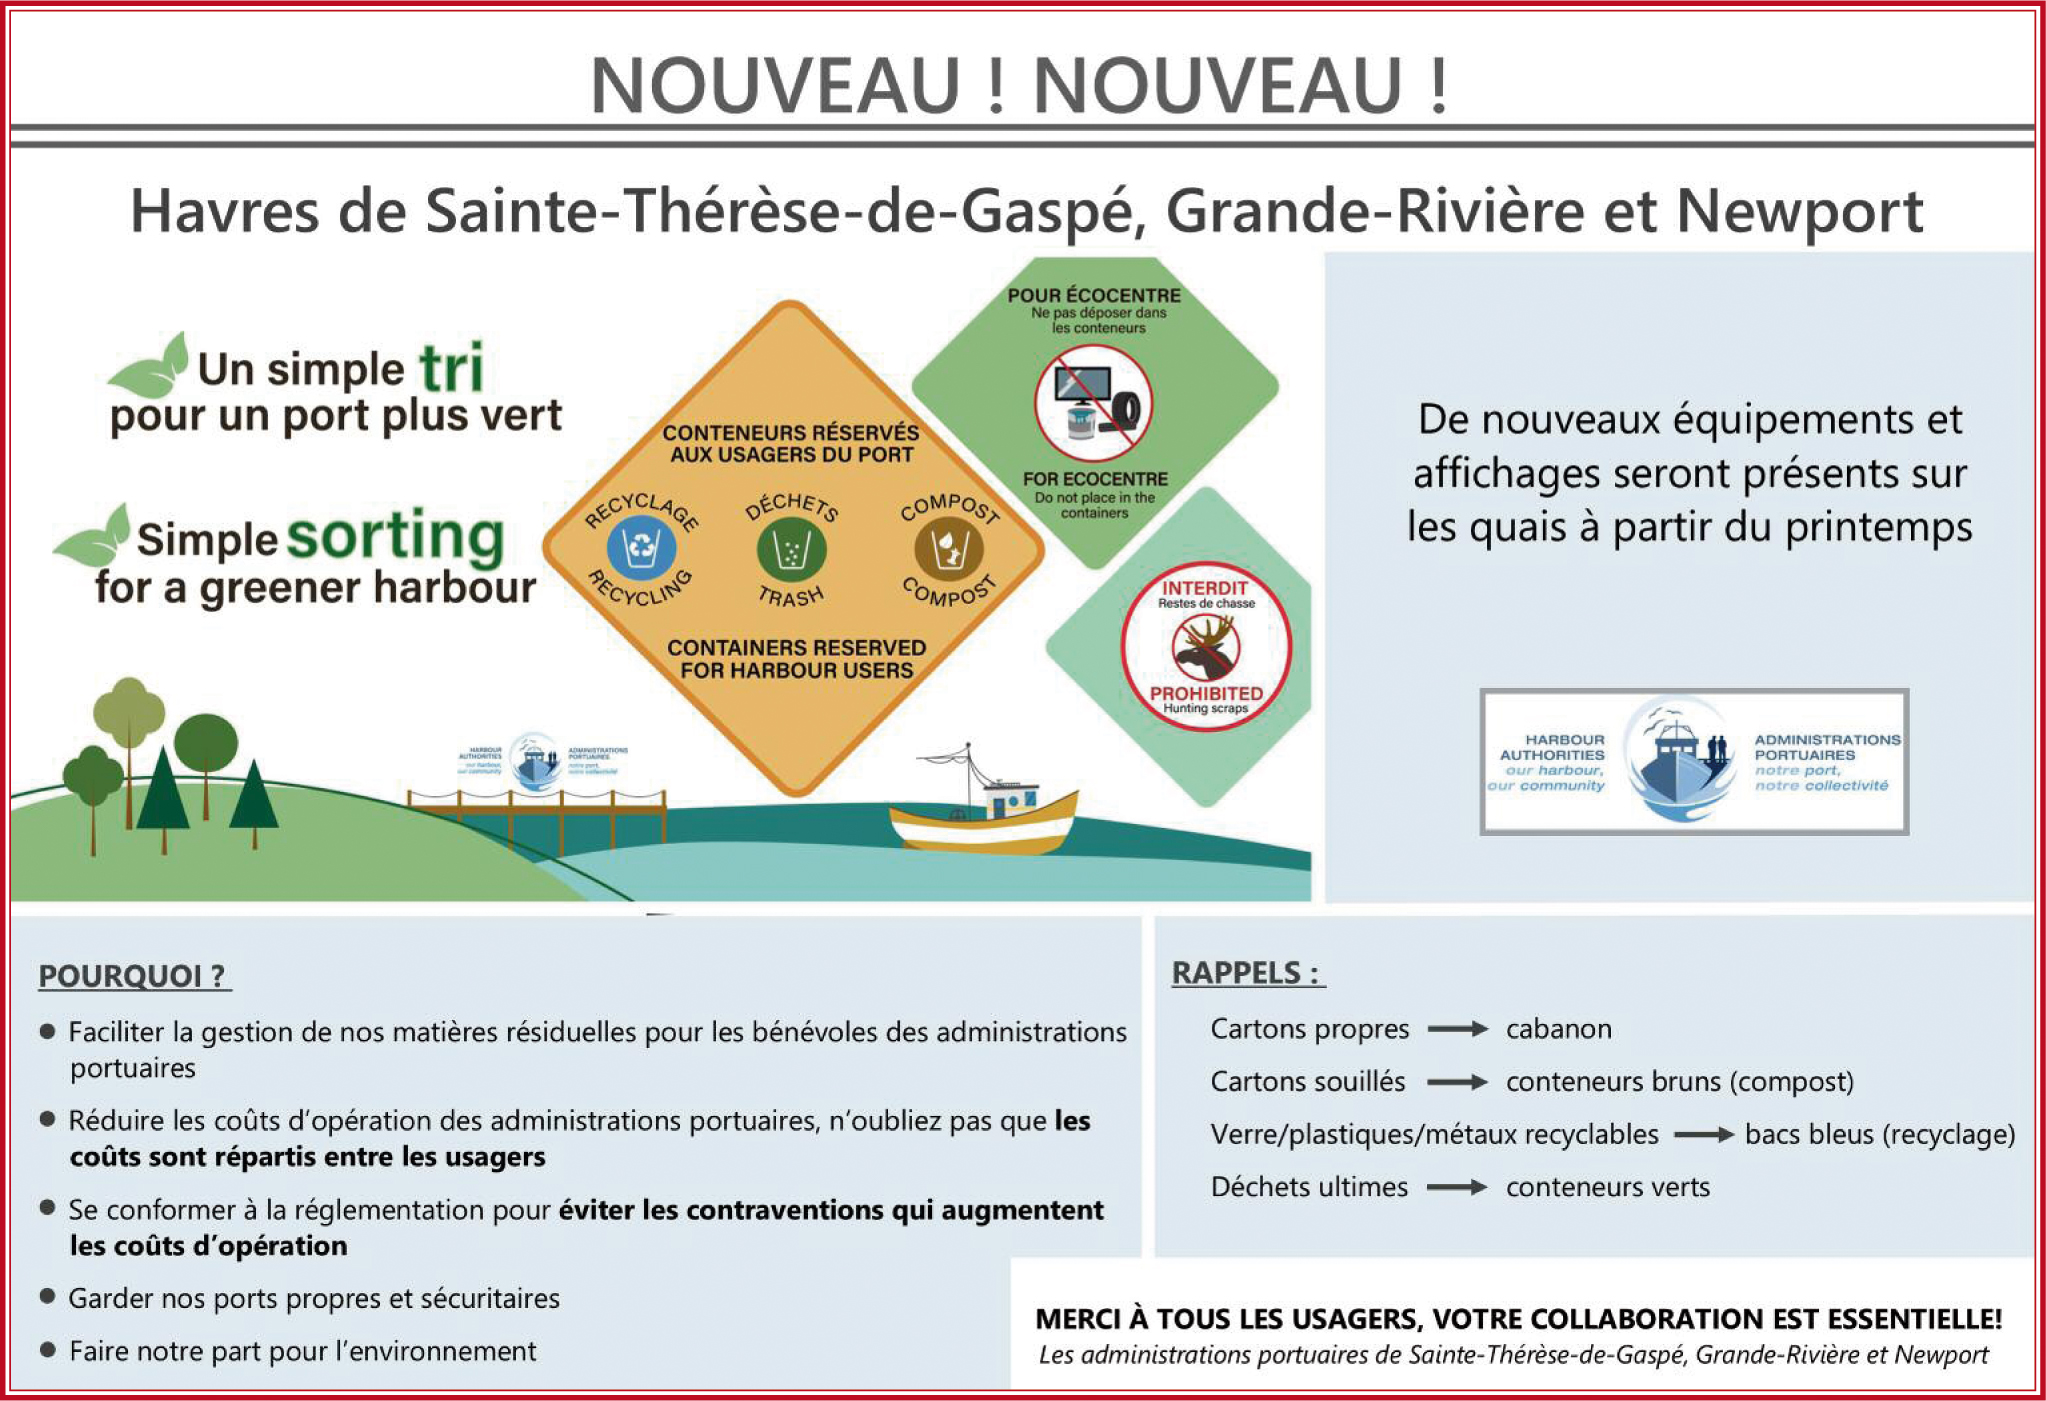 Havres de Sainte-Thérèse-de-Gaspé, Grande-Rivière et Newport